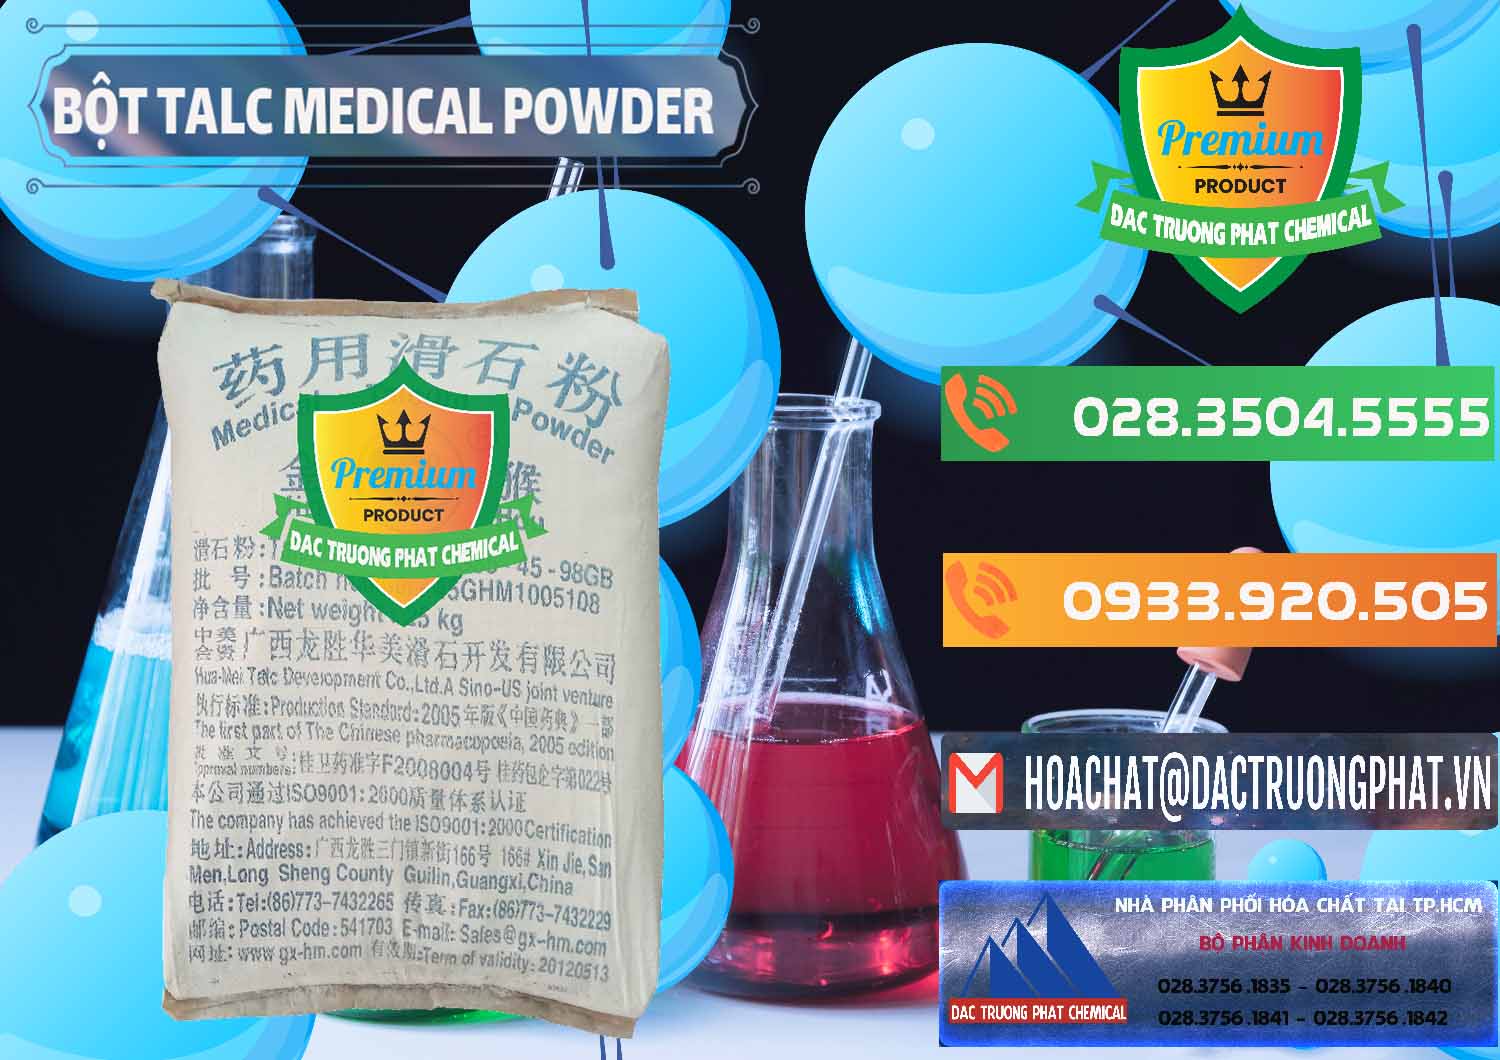 Chuyên bán và cung cấp Bột Talc Medical Powder Trung Quốc China - 0036 - Chuyên cung cấp - phân phối hóa chất tại TP.HCM - hoachatxulynuoc.com.vn